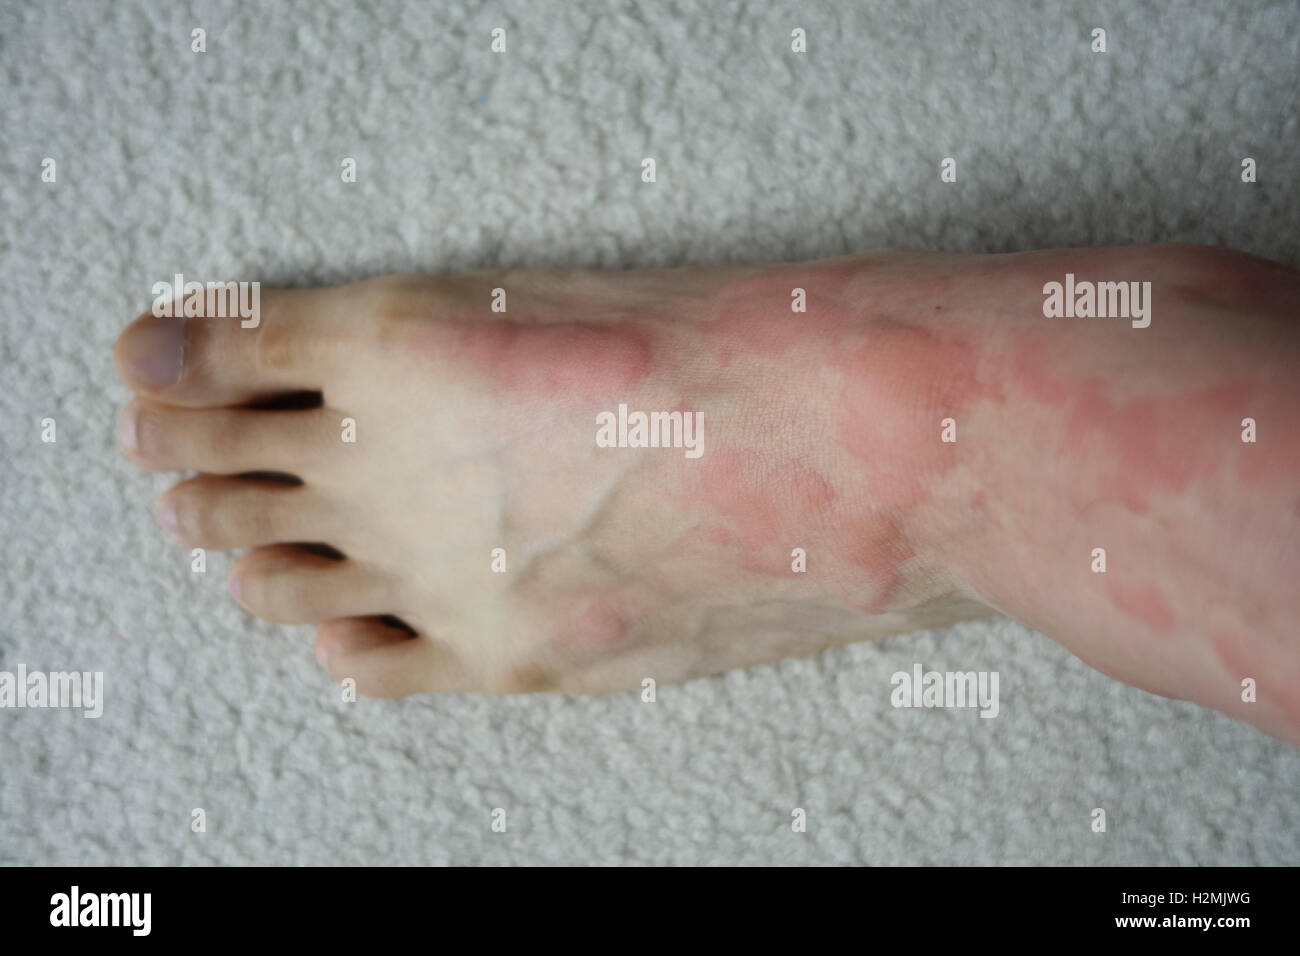 Reacción alérgica severa de la piel del pie de la colmena Foto de stock